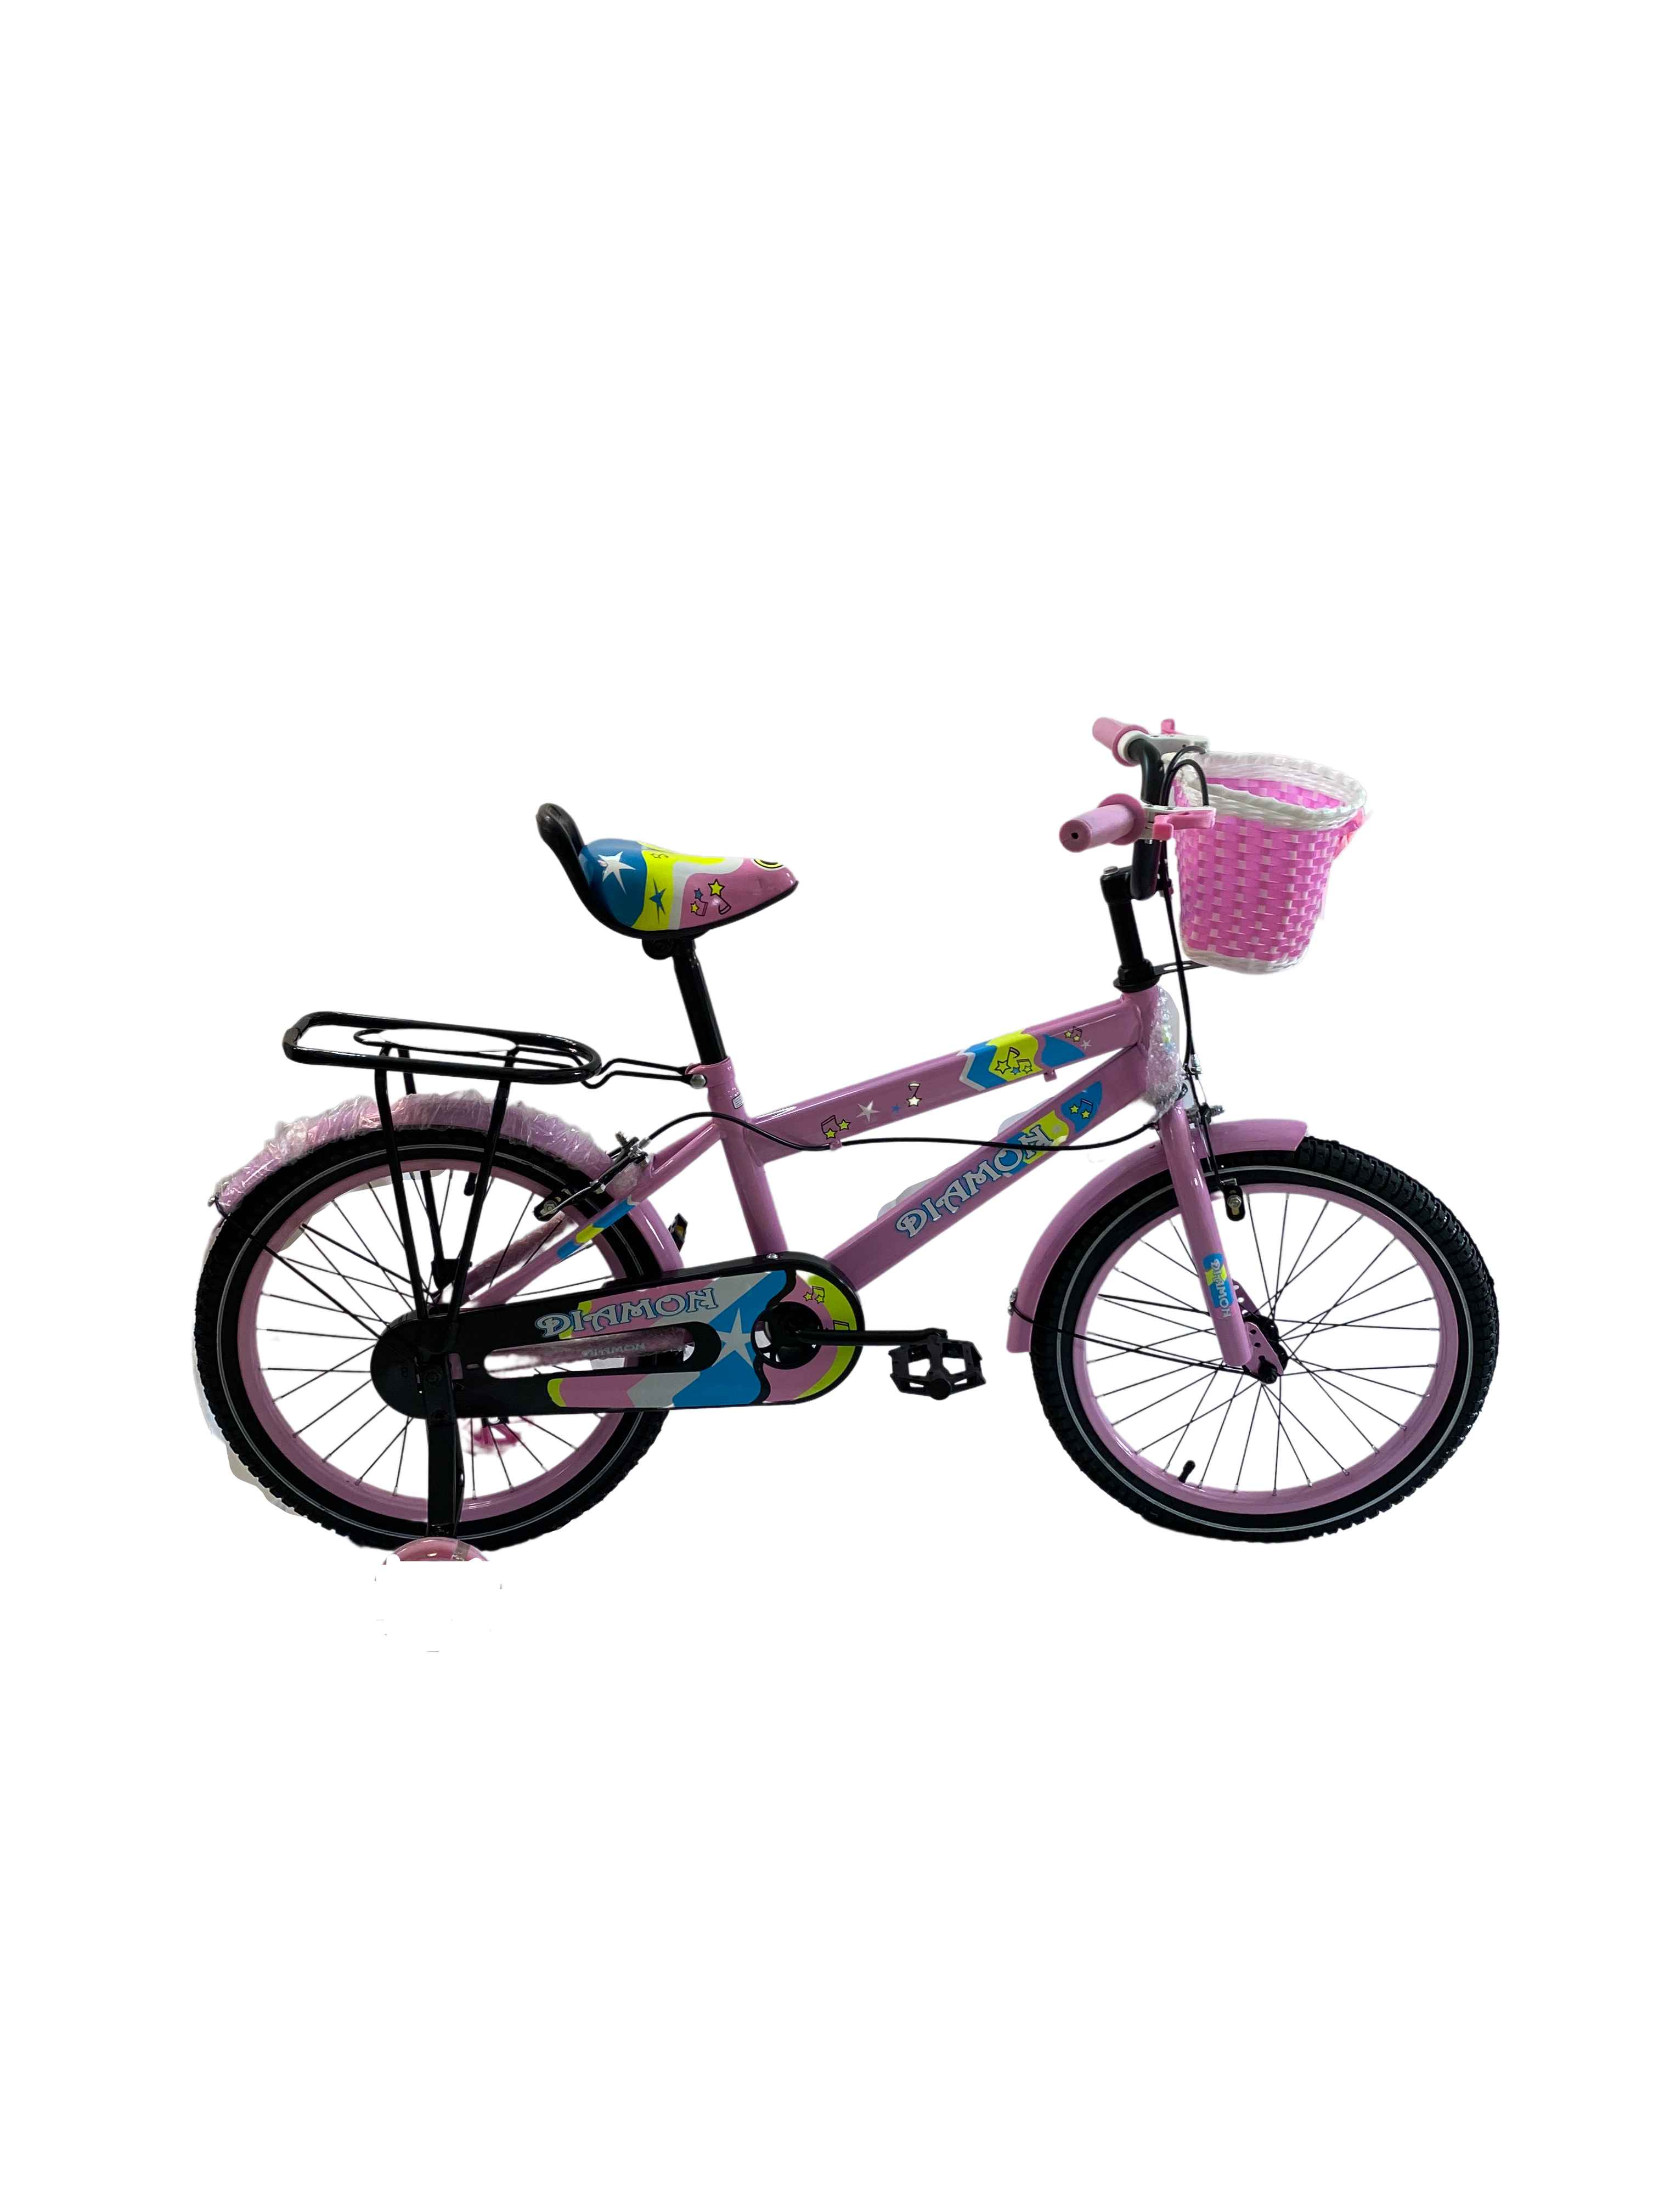 Bicicleta Go Kart 20inch Diamon, pentru copii cu varsta 6-10 ani,cu cos jucarii , cric,culoare roz